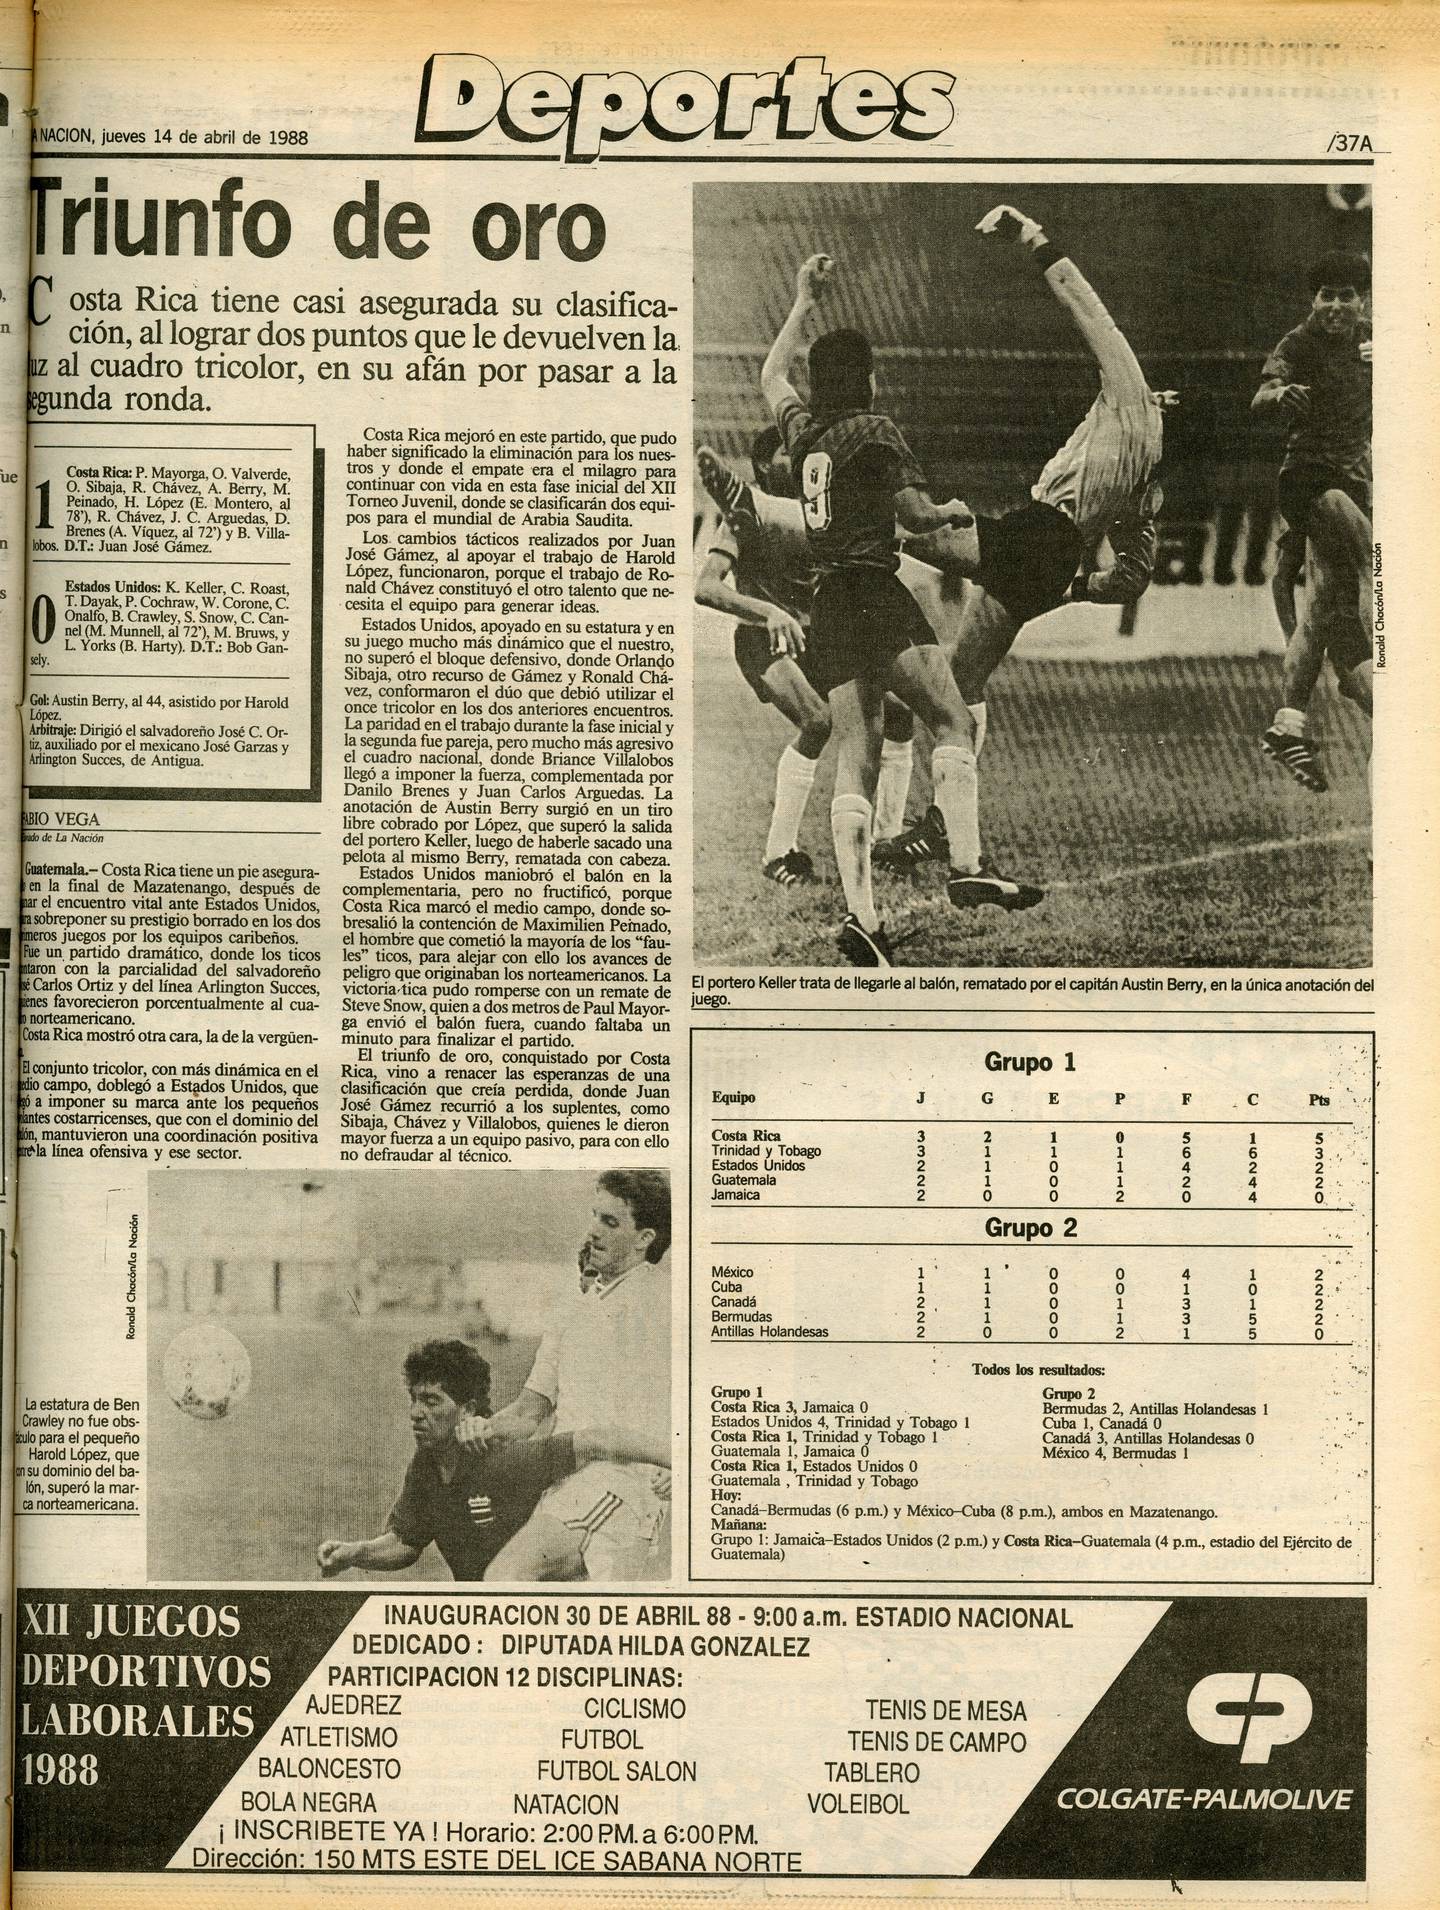 'La Nación' calificó como 'triunfo de oro' la victoria de la Selección Sub-20 de Costa Rica contra Estados Unidos en el Premundial en 1988.